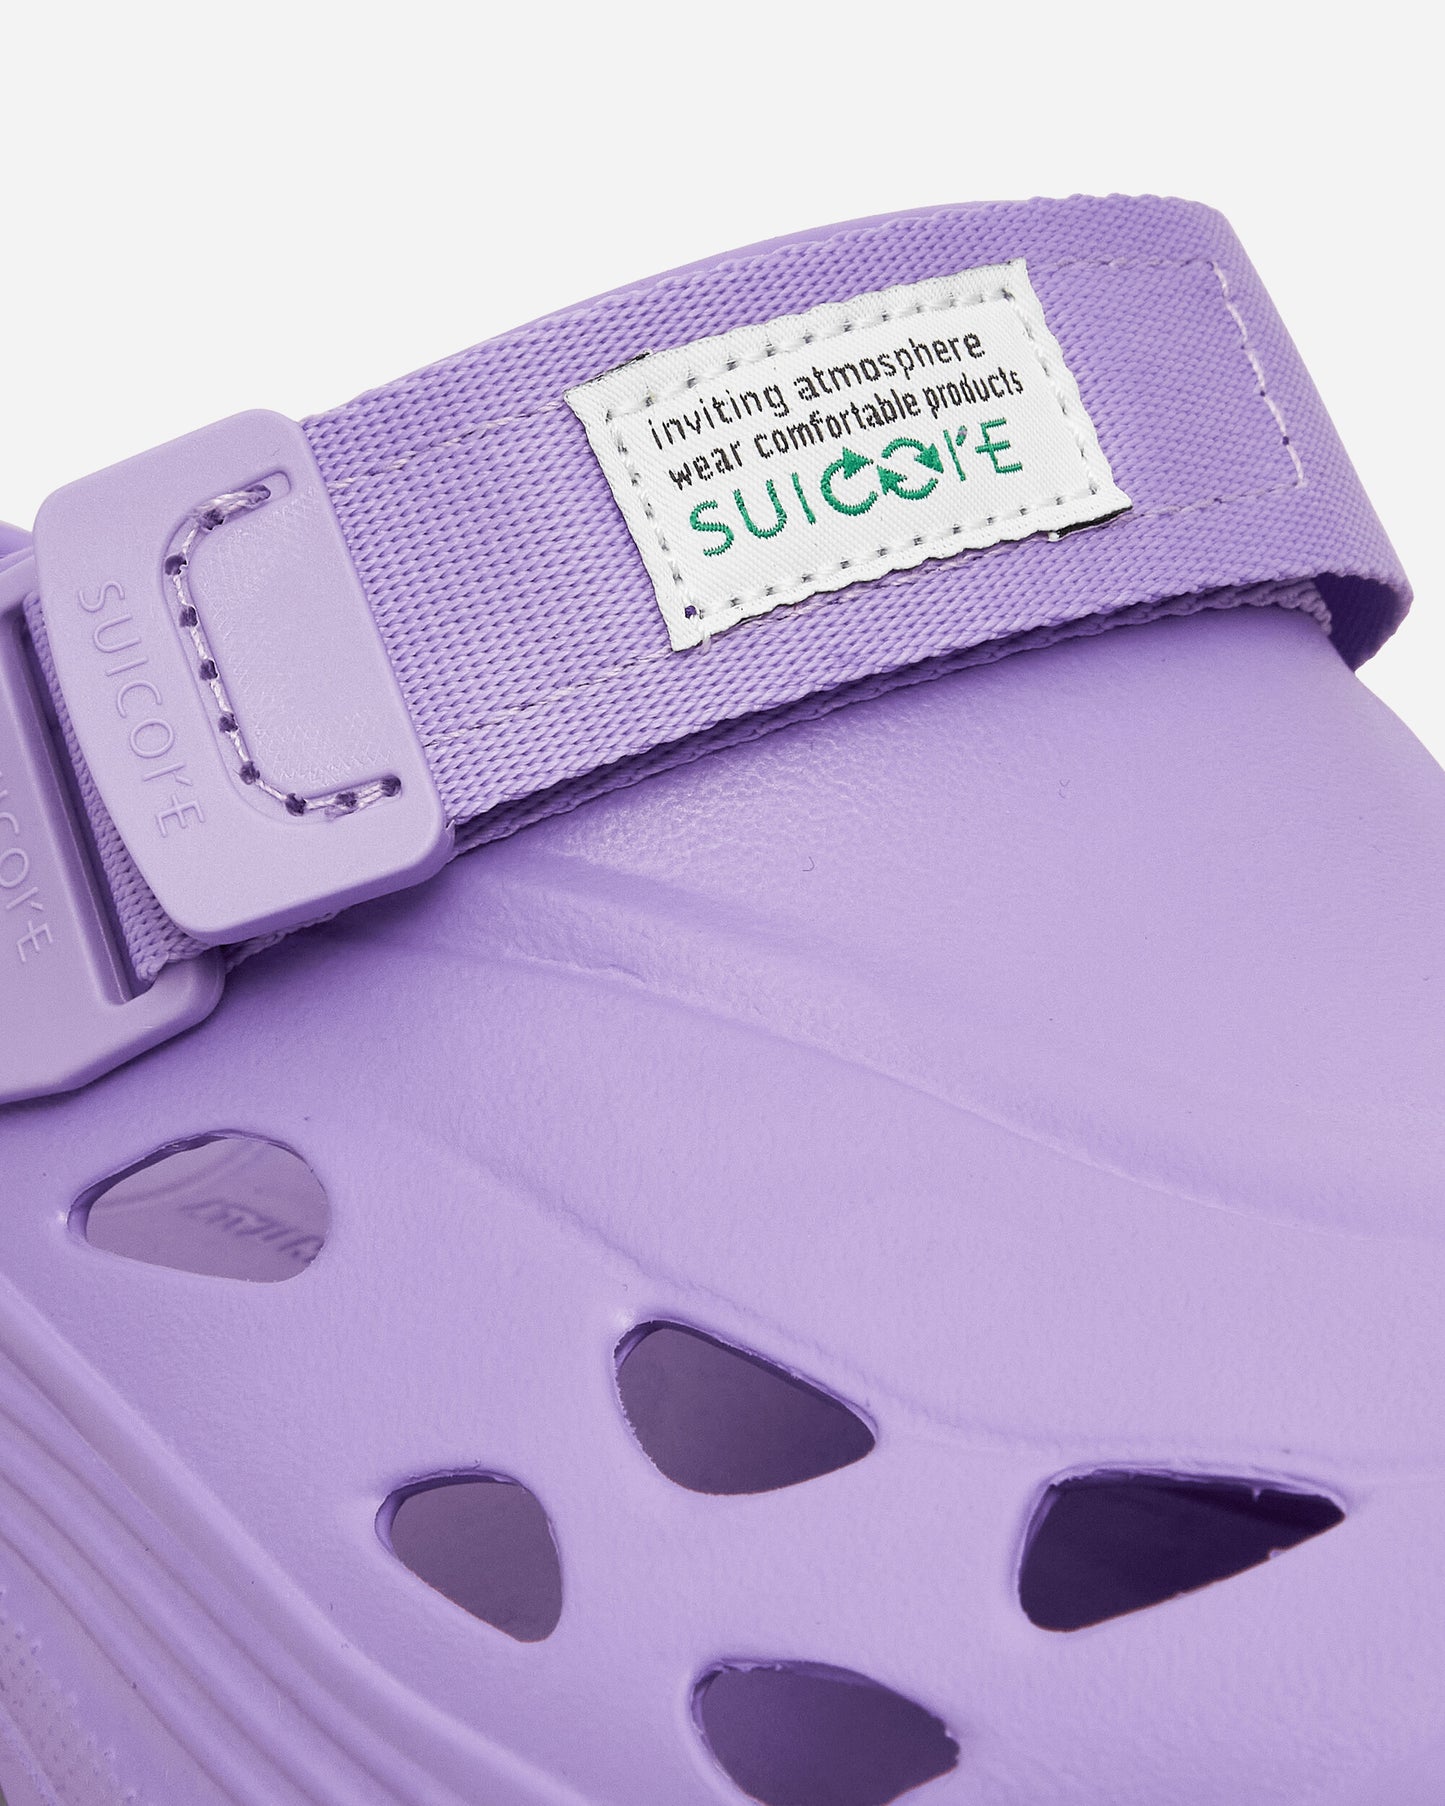 Suicoke Mok Purple Sneakers Low OGINJ101 PRP